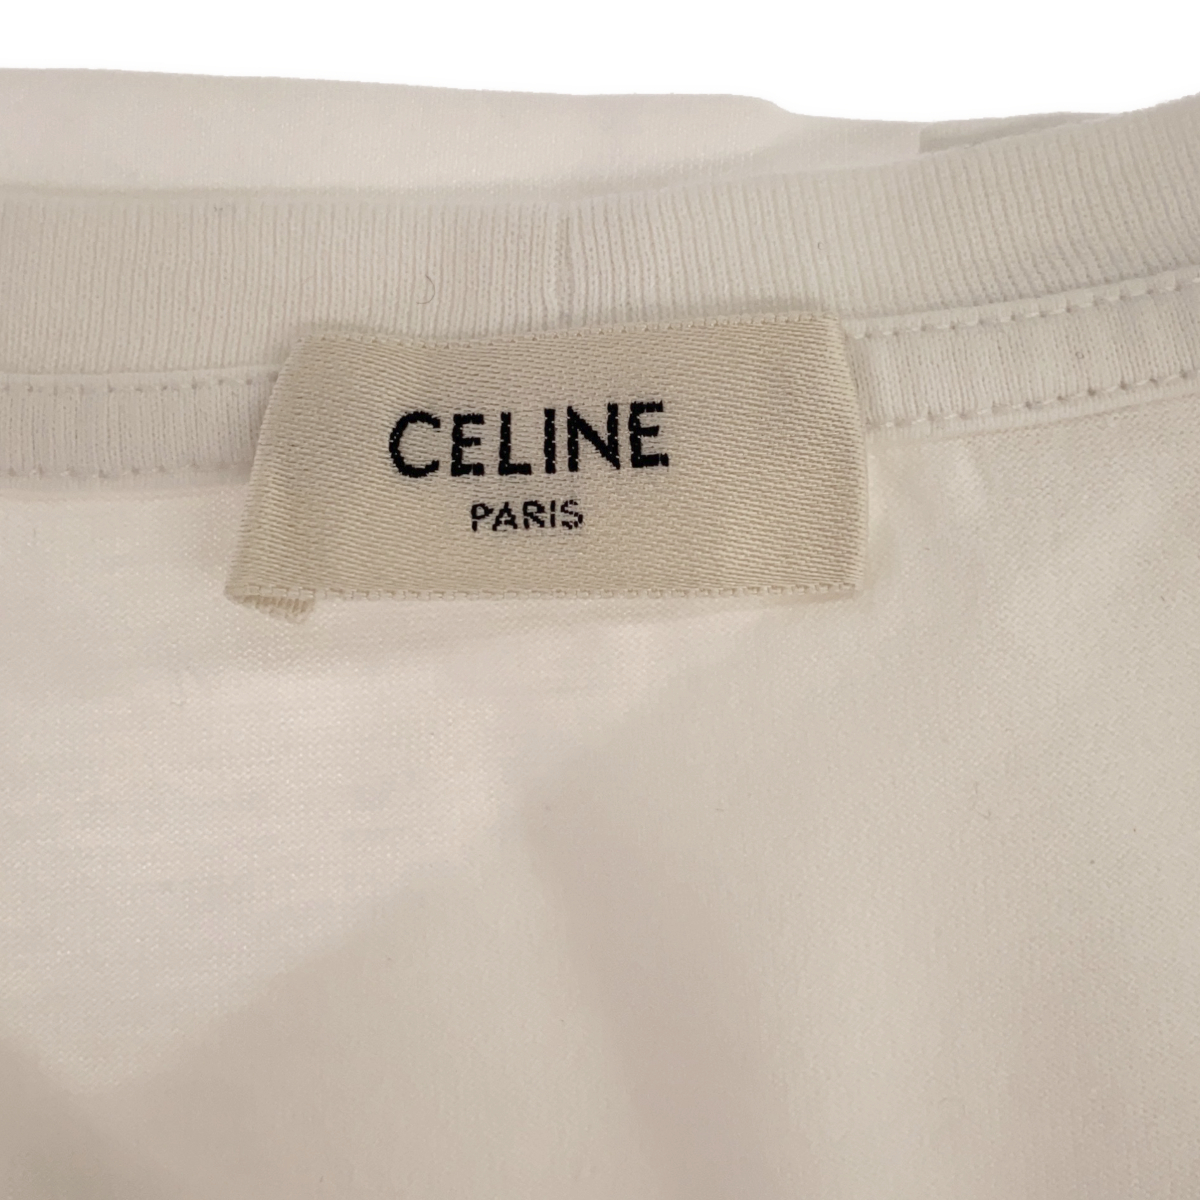 CELINE Celine Logo футболка белый белый 2X314916G бренд одежда женский L размер одежда 